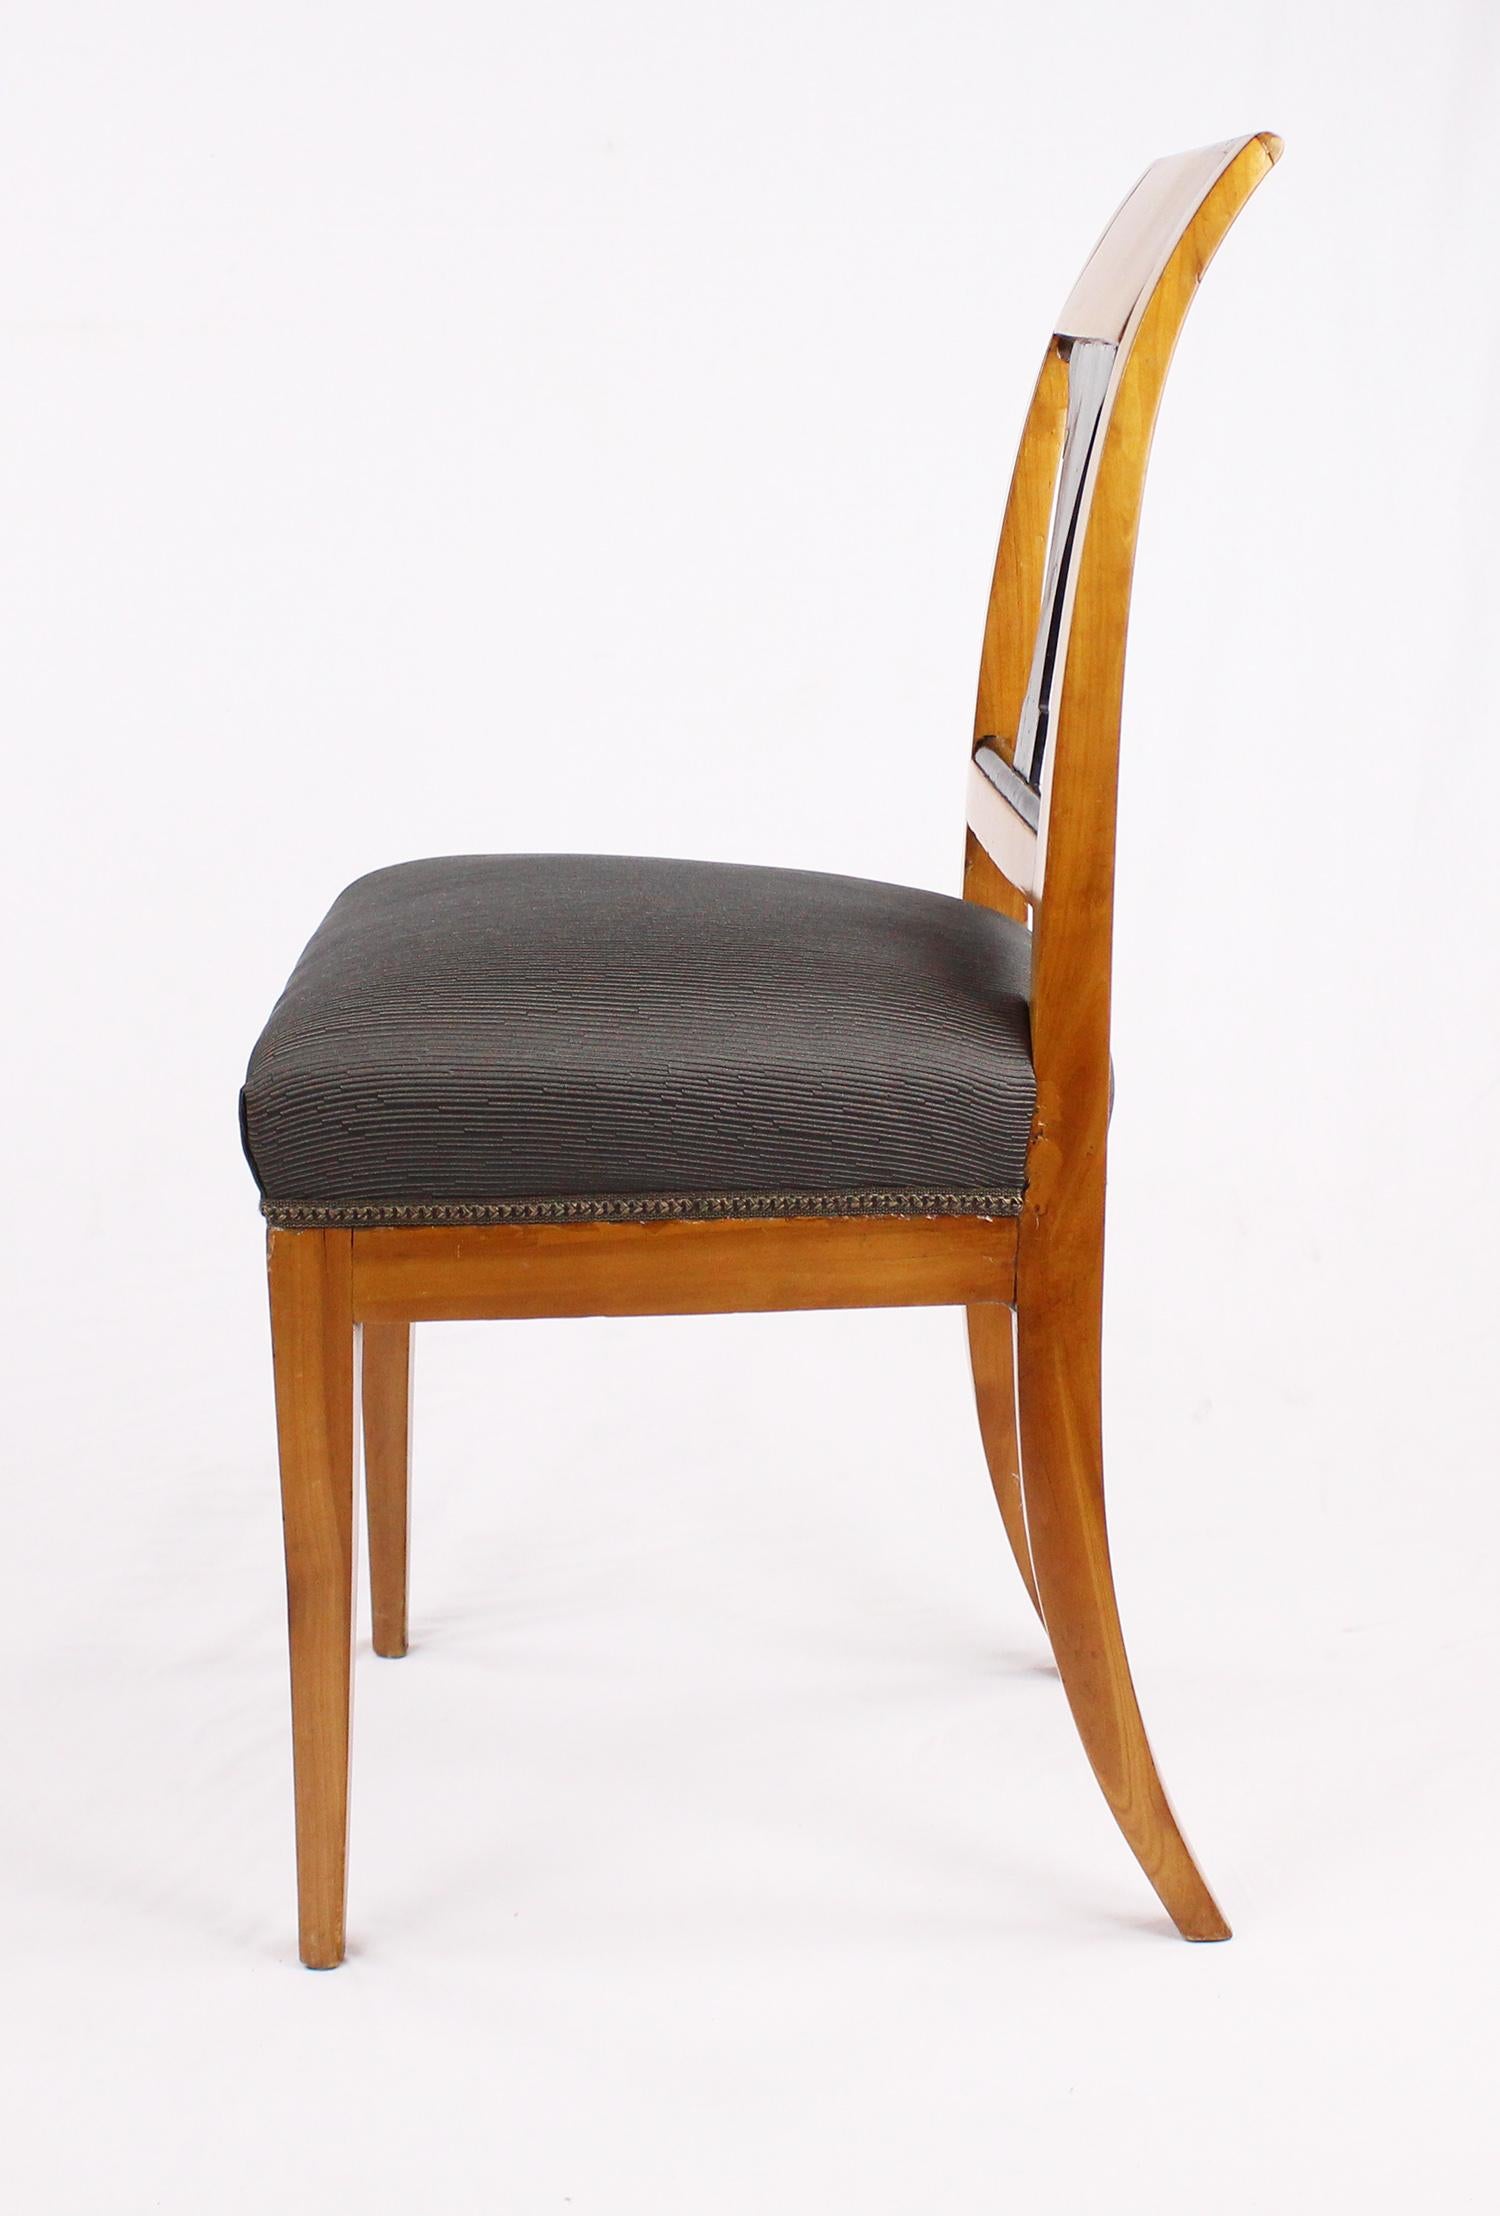 19th Century Biedermeier Period Chair, Cherrywood, circa 1820 For Sale 5